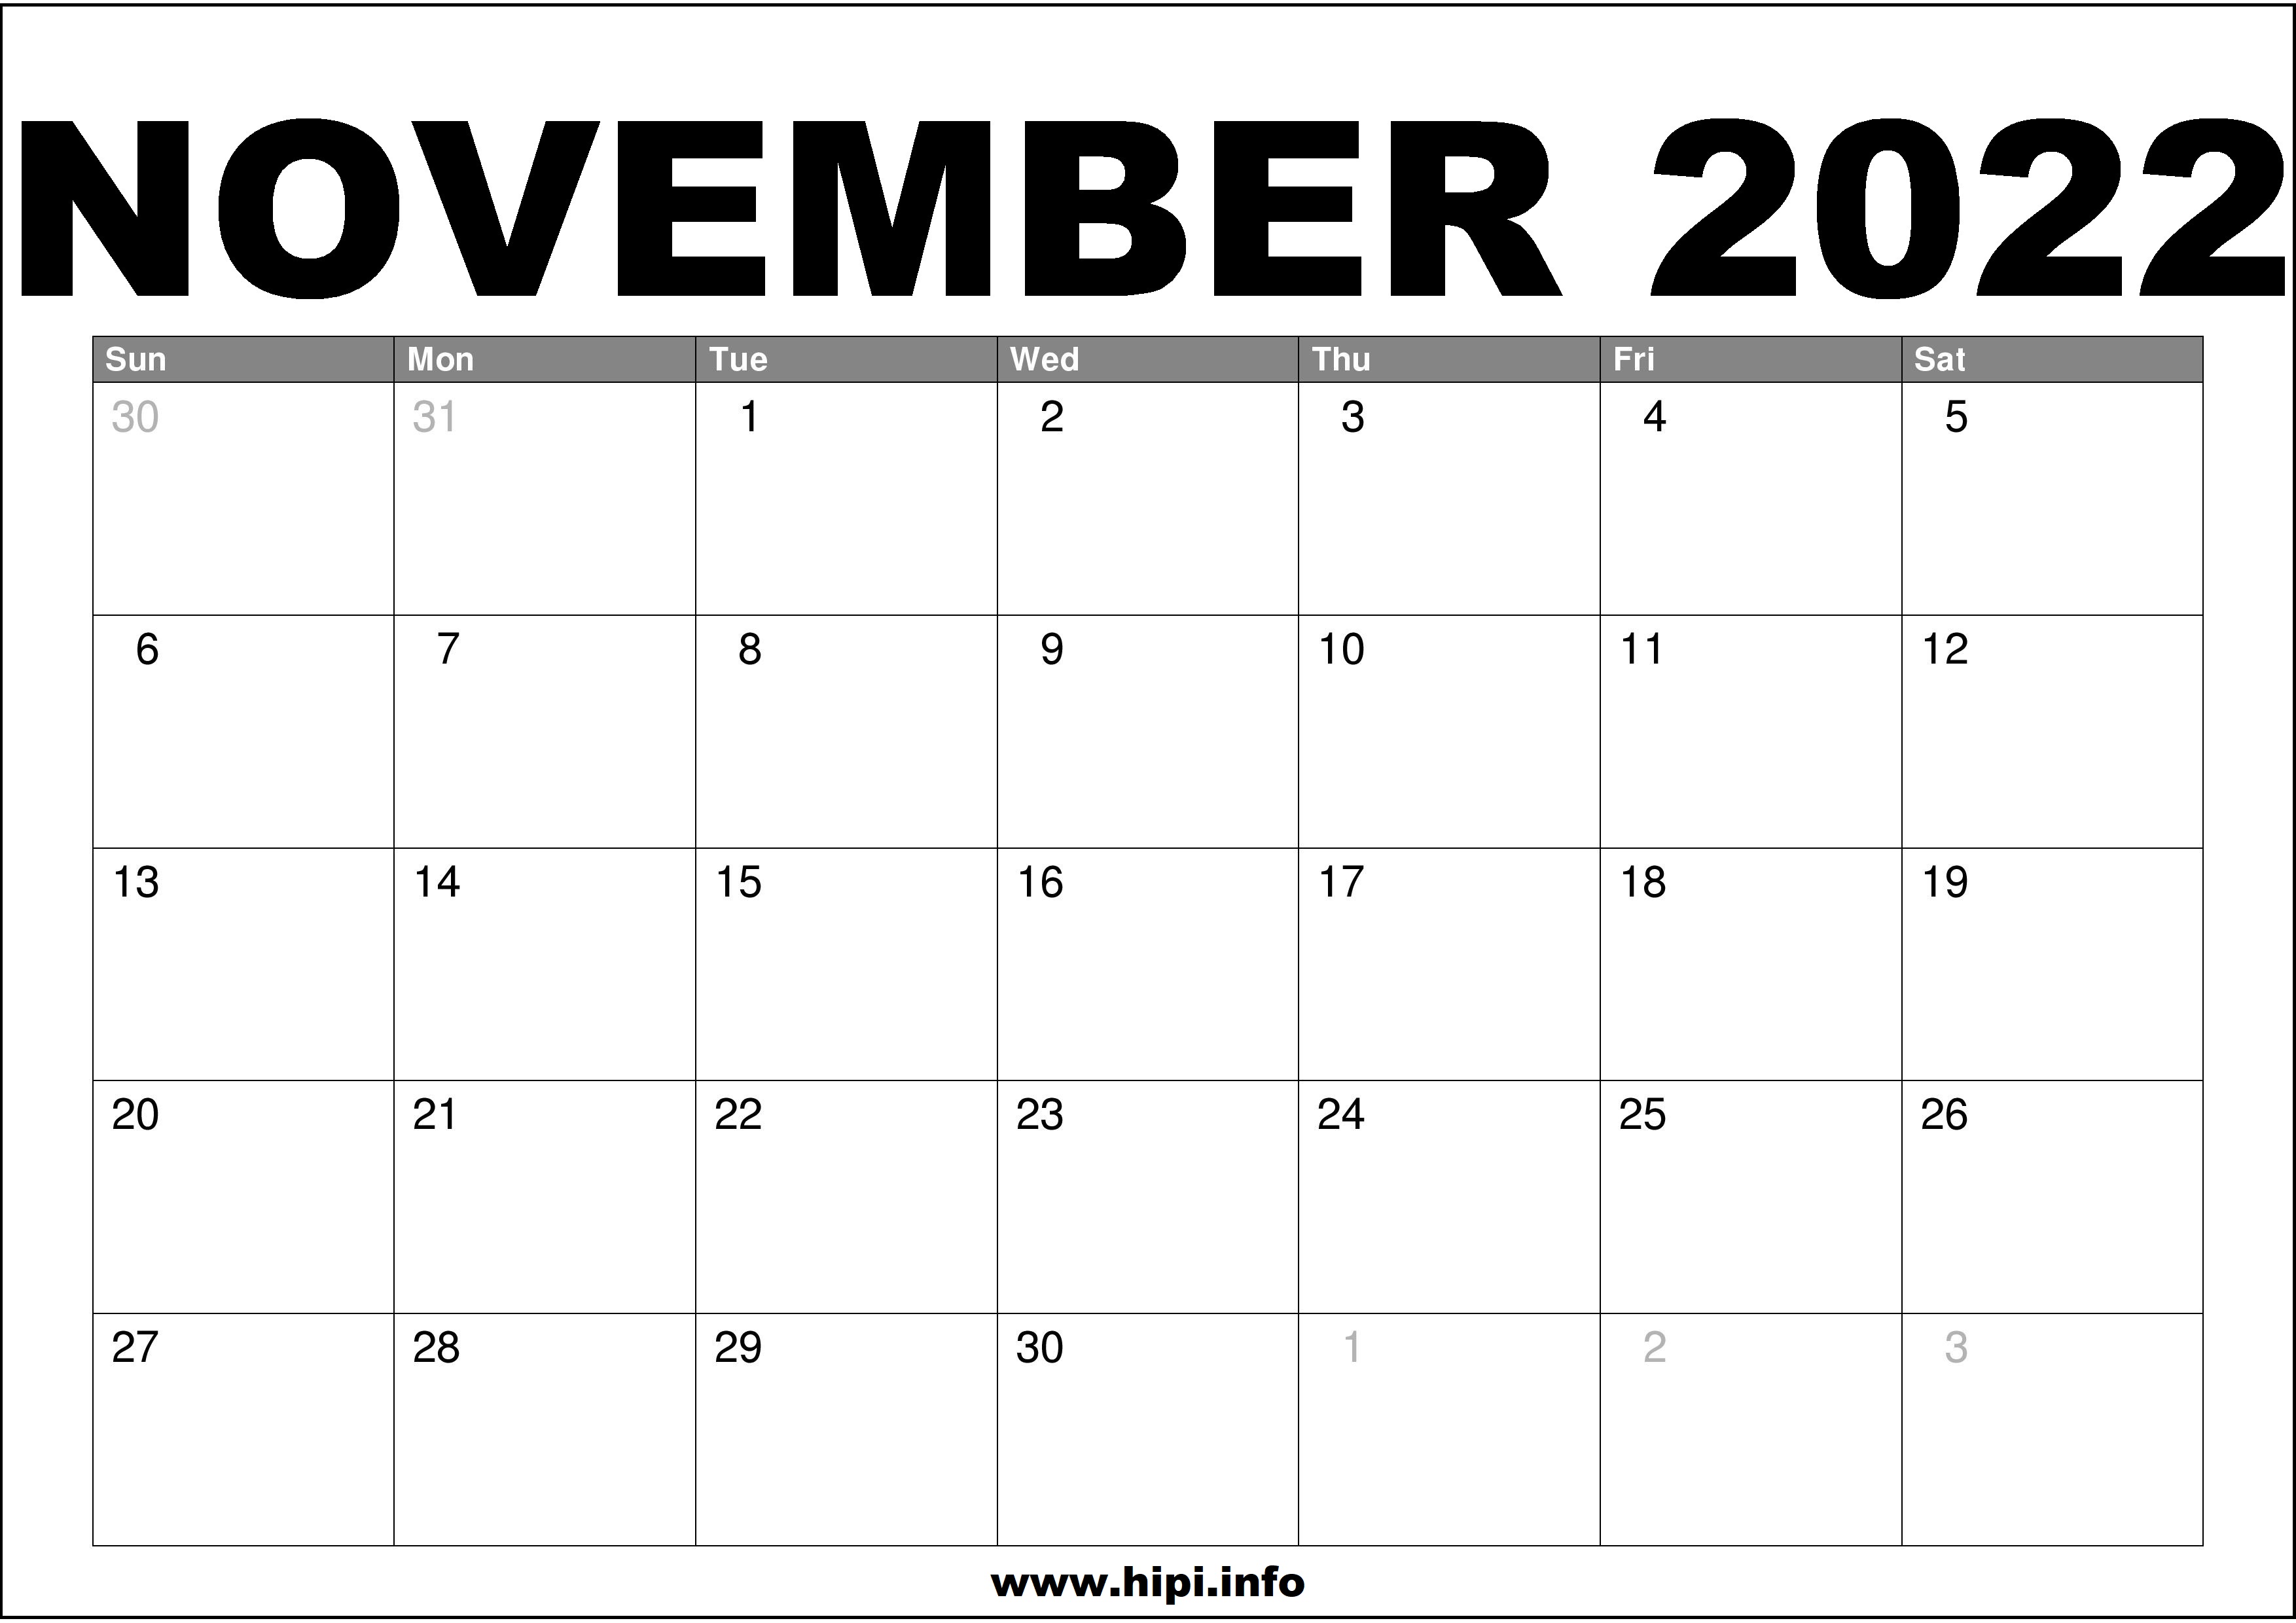 November Calendar 2022 November 2022 Calendar Printable Free - Hipi.info | Calendars Printable Free